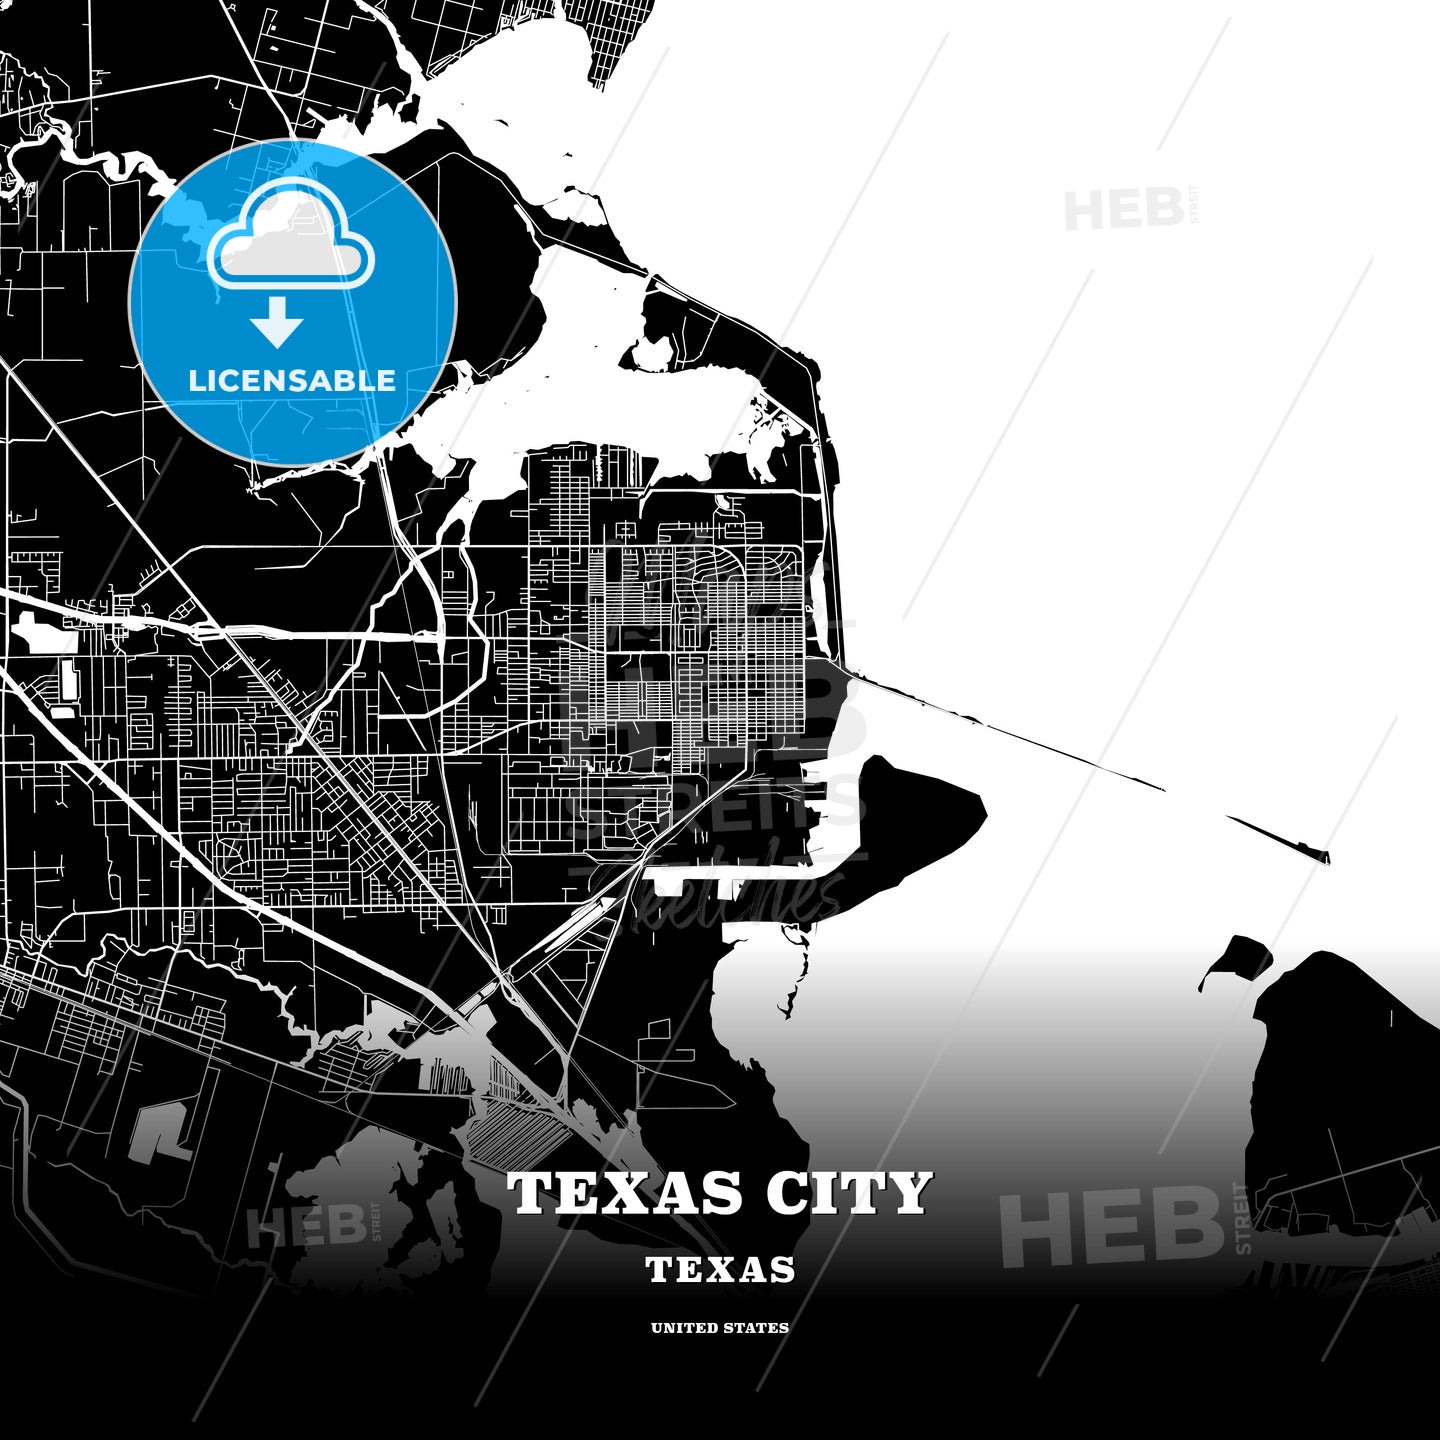 Texas City, Texas, USA map